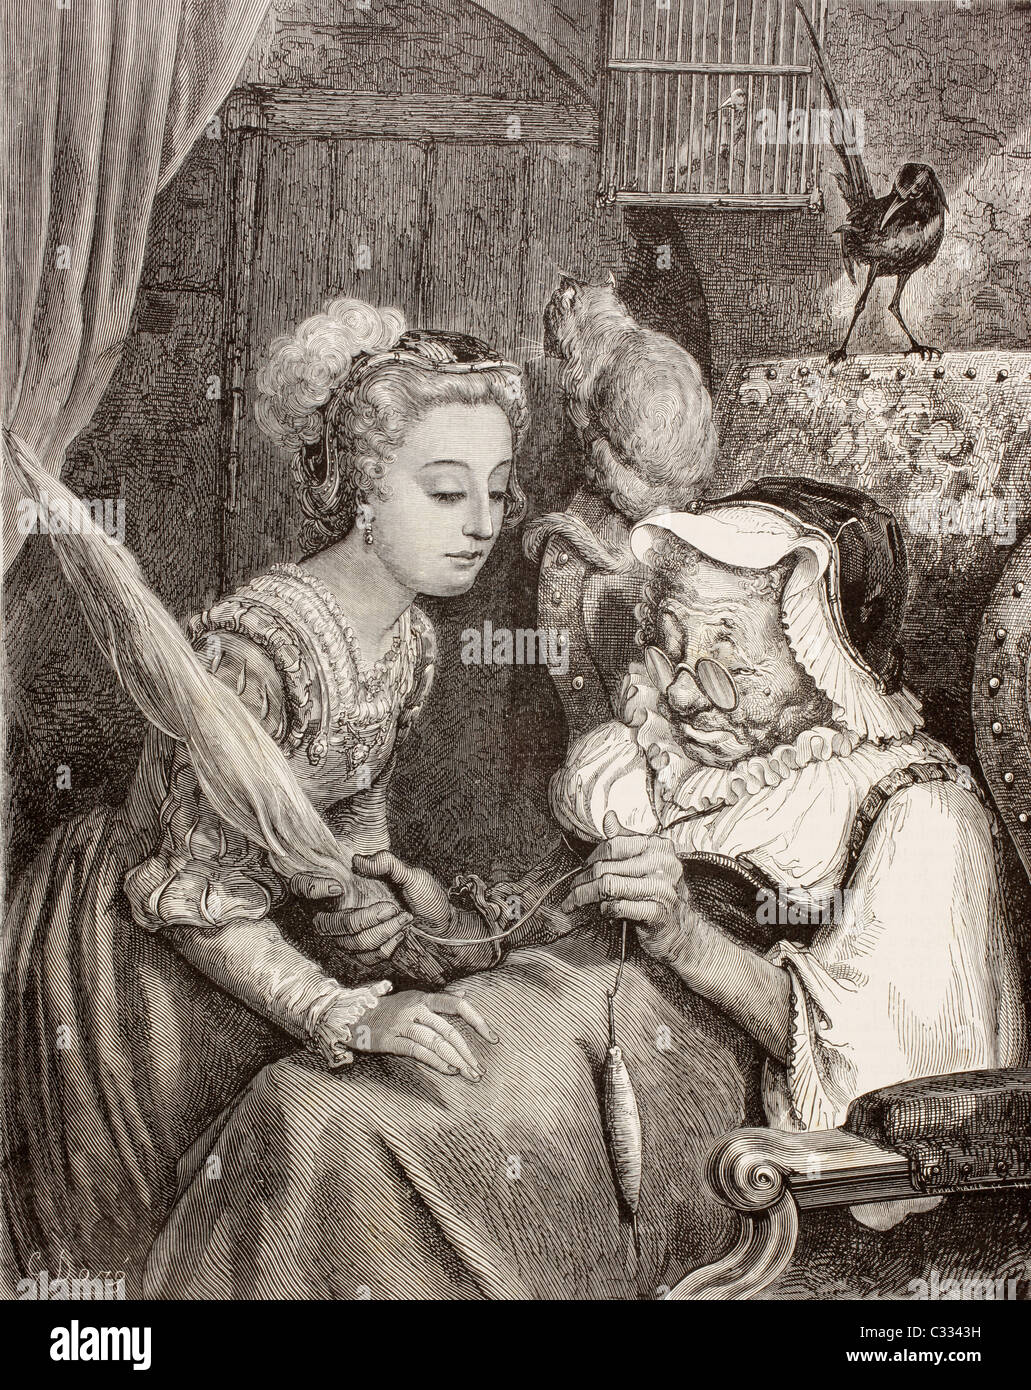 Szene aus Dornröschen von Charles Perrault. Die Prinzessin findet eine alte Frau Spinnen, ohne zu wissen, dass sie die böse Fee ist Stockfoto